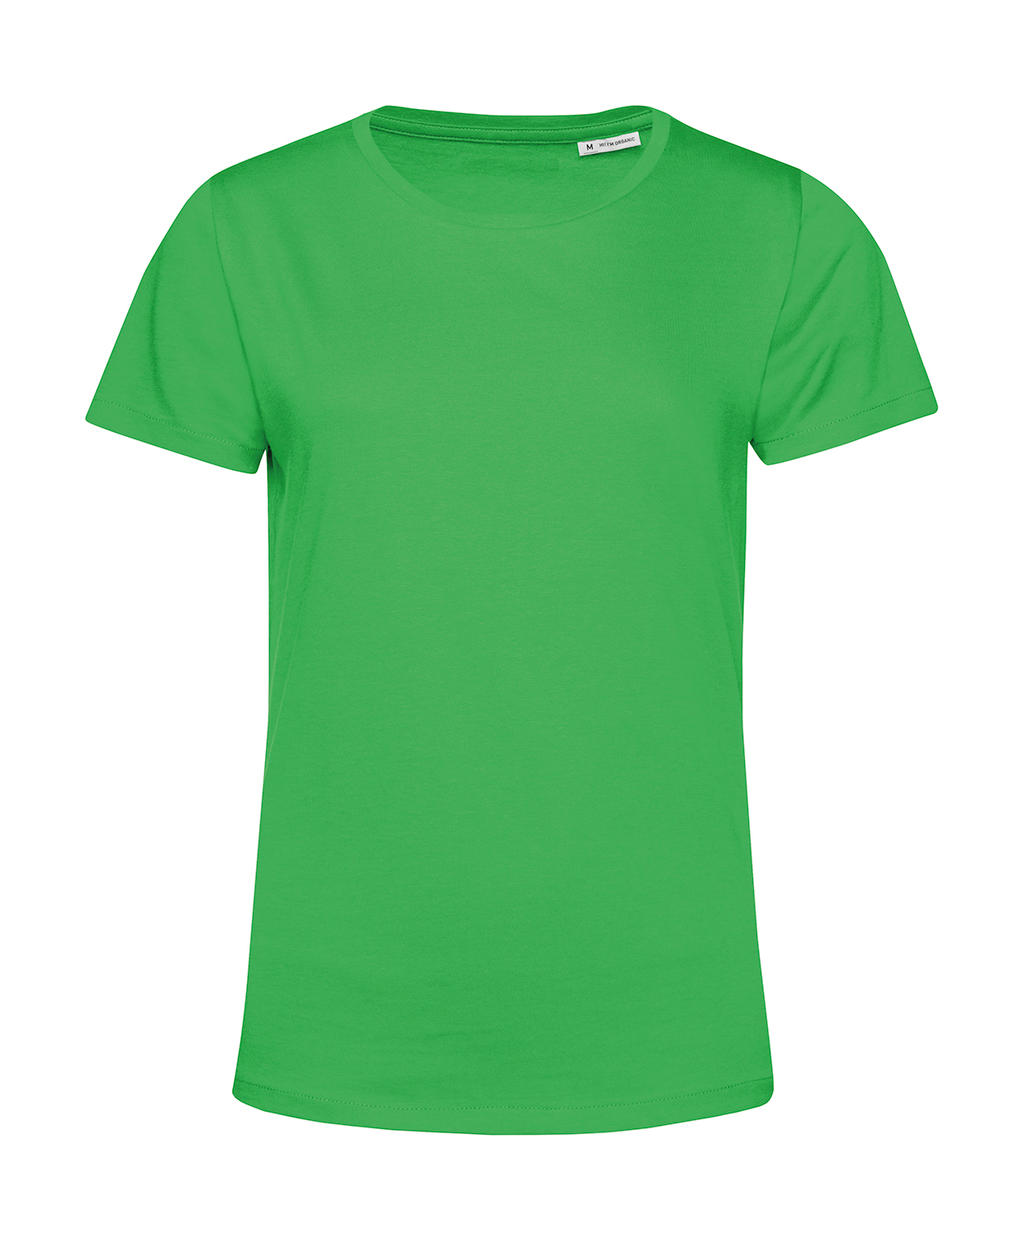 Tričko dámské BC Organic Inspire E150 - zelené, XL